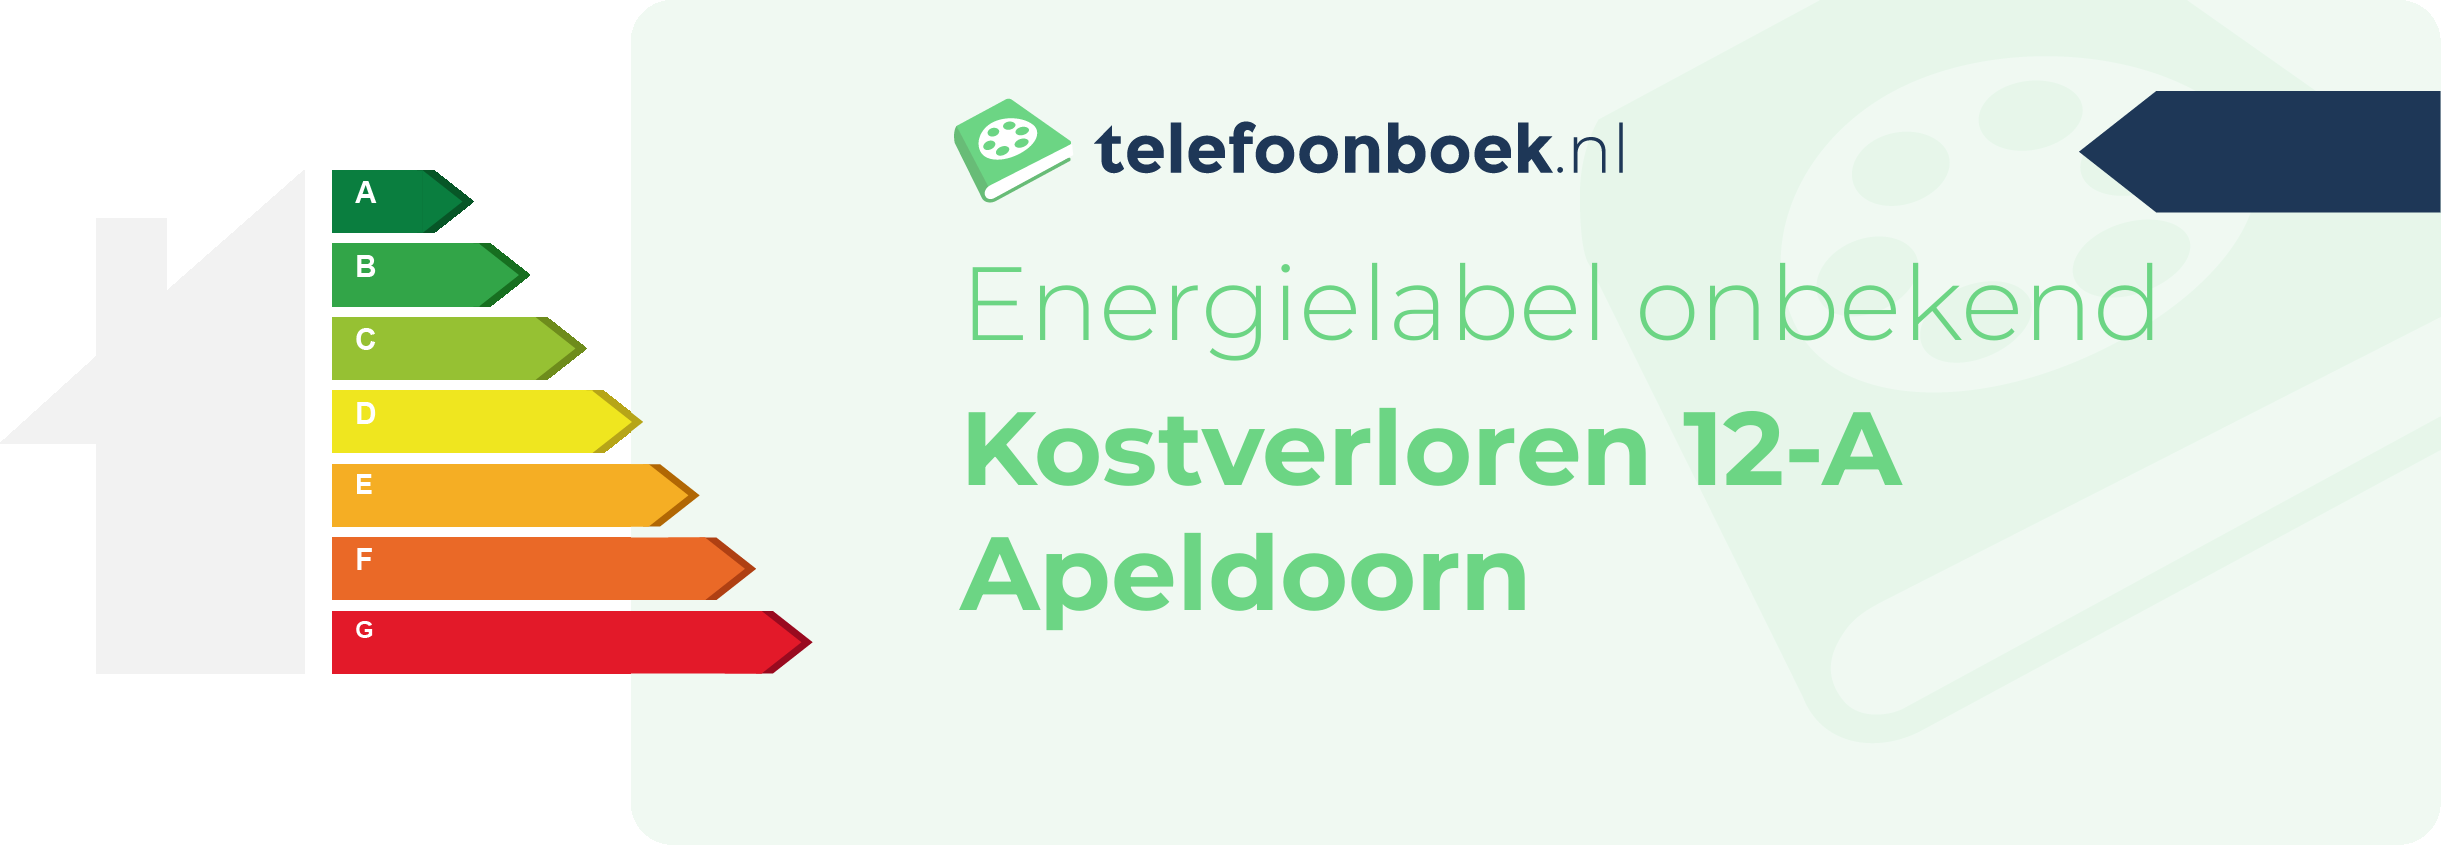 Energielabel Kostverloren 12-A Apeldoorn